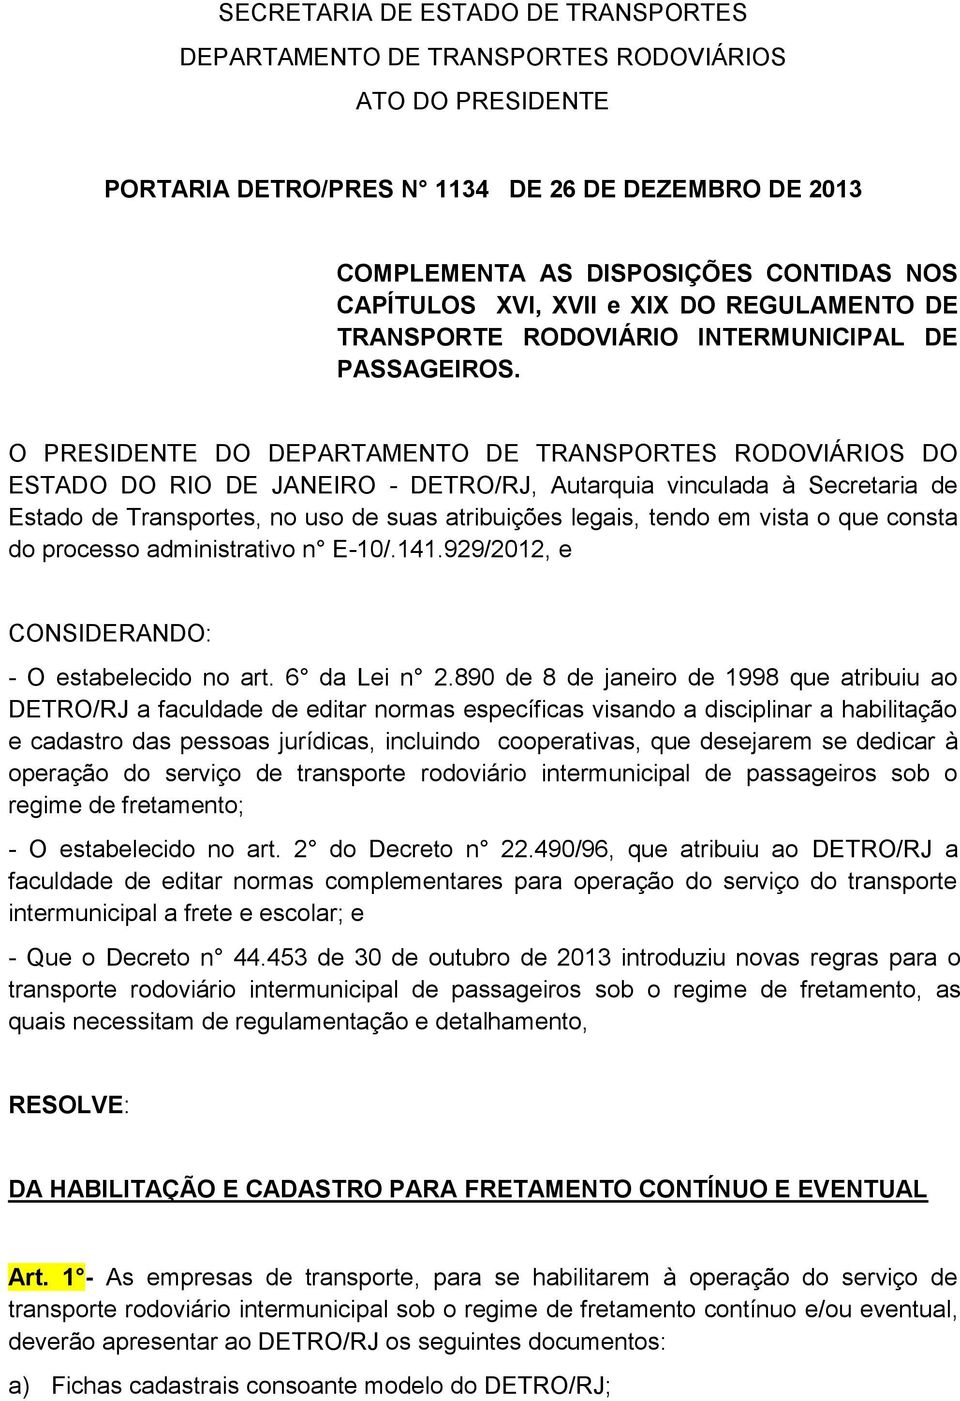 O PRESIDENTE DO DEPARTAMENTO DE TRANSPORTES RODOVIÁRIOS DO ESTADO DO RIO DE JANEIRO - DETRO/RJ, Autarquia vinculada à Secretaria de Estado de Transportes, no uso de suas atribuições legais, tendo em